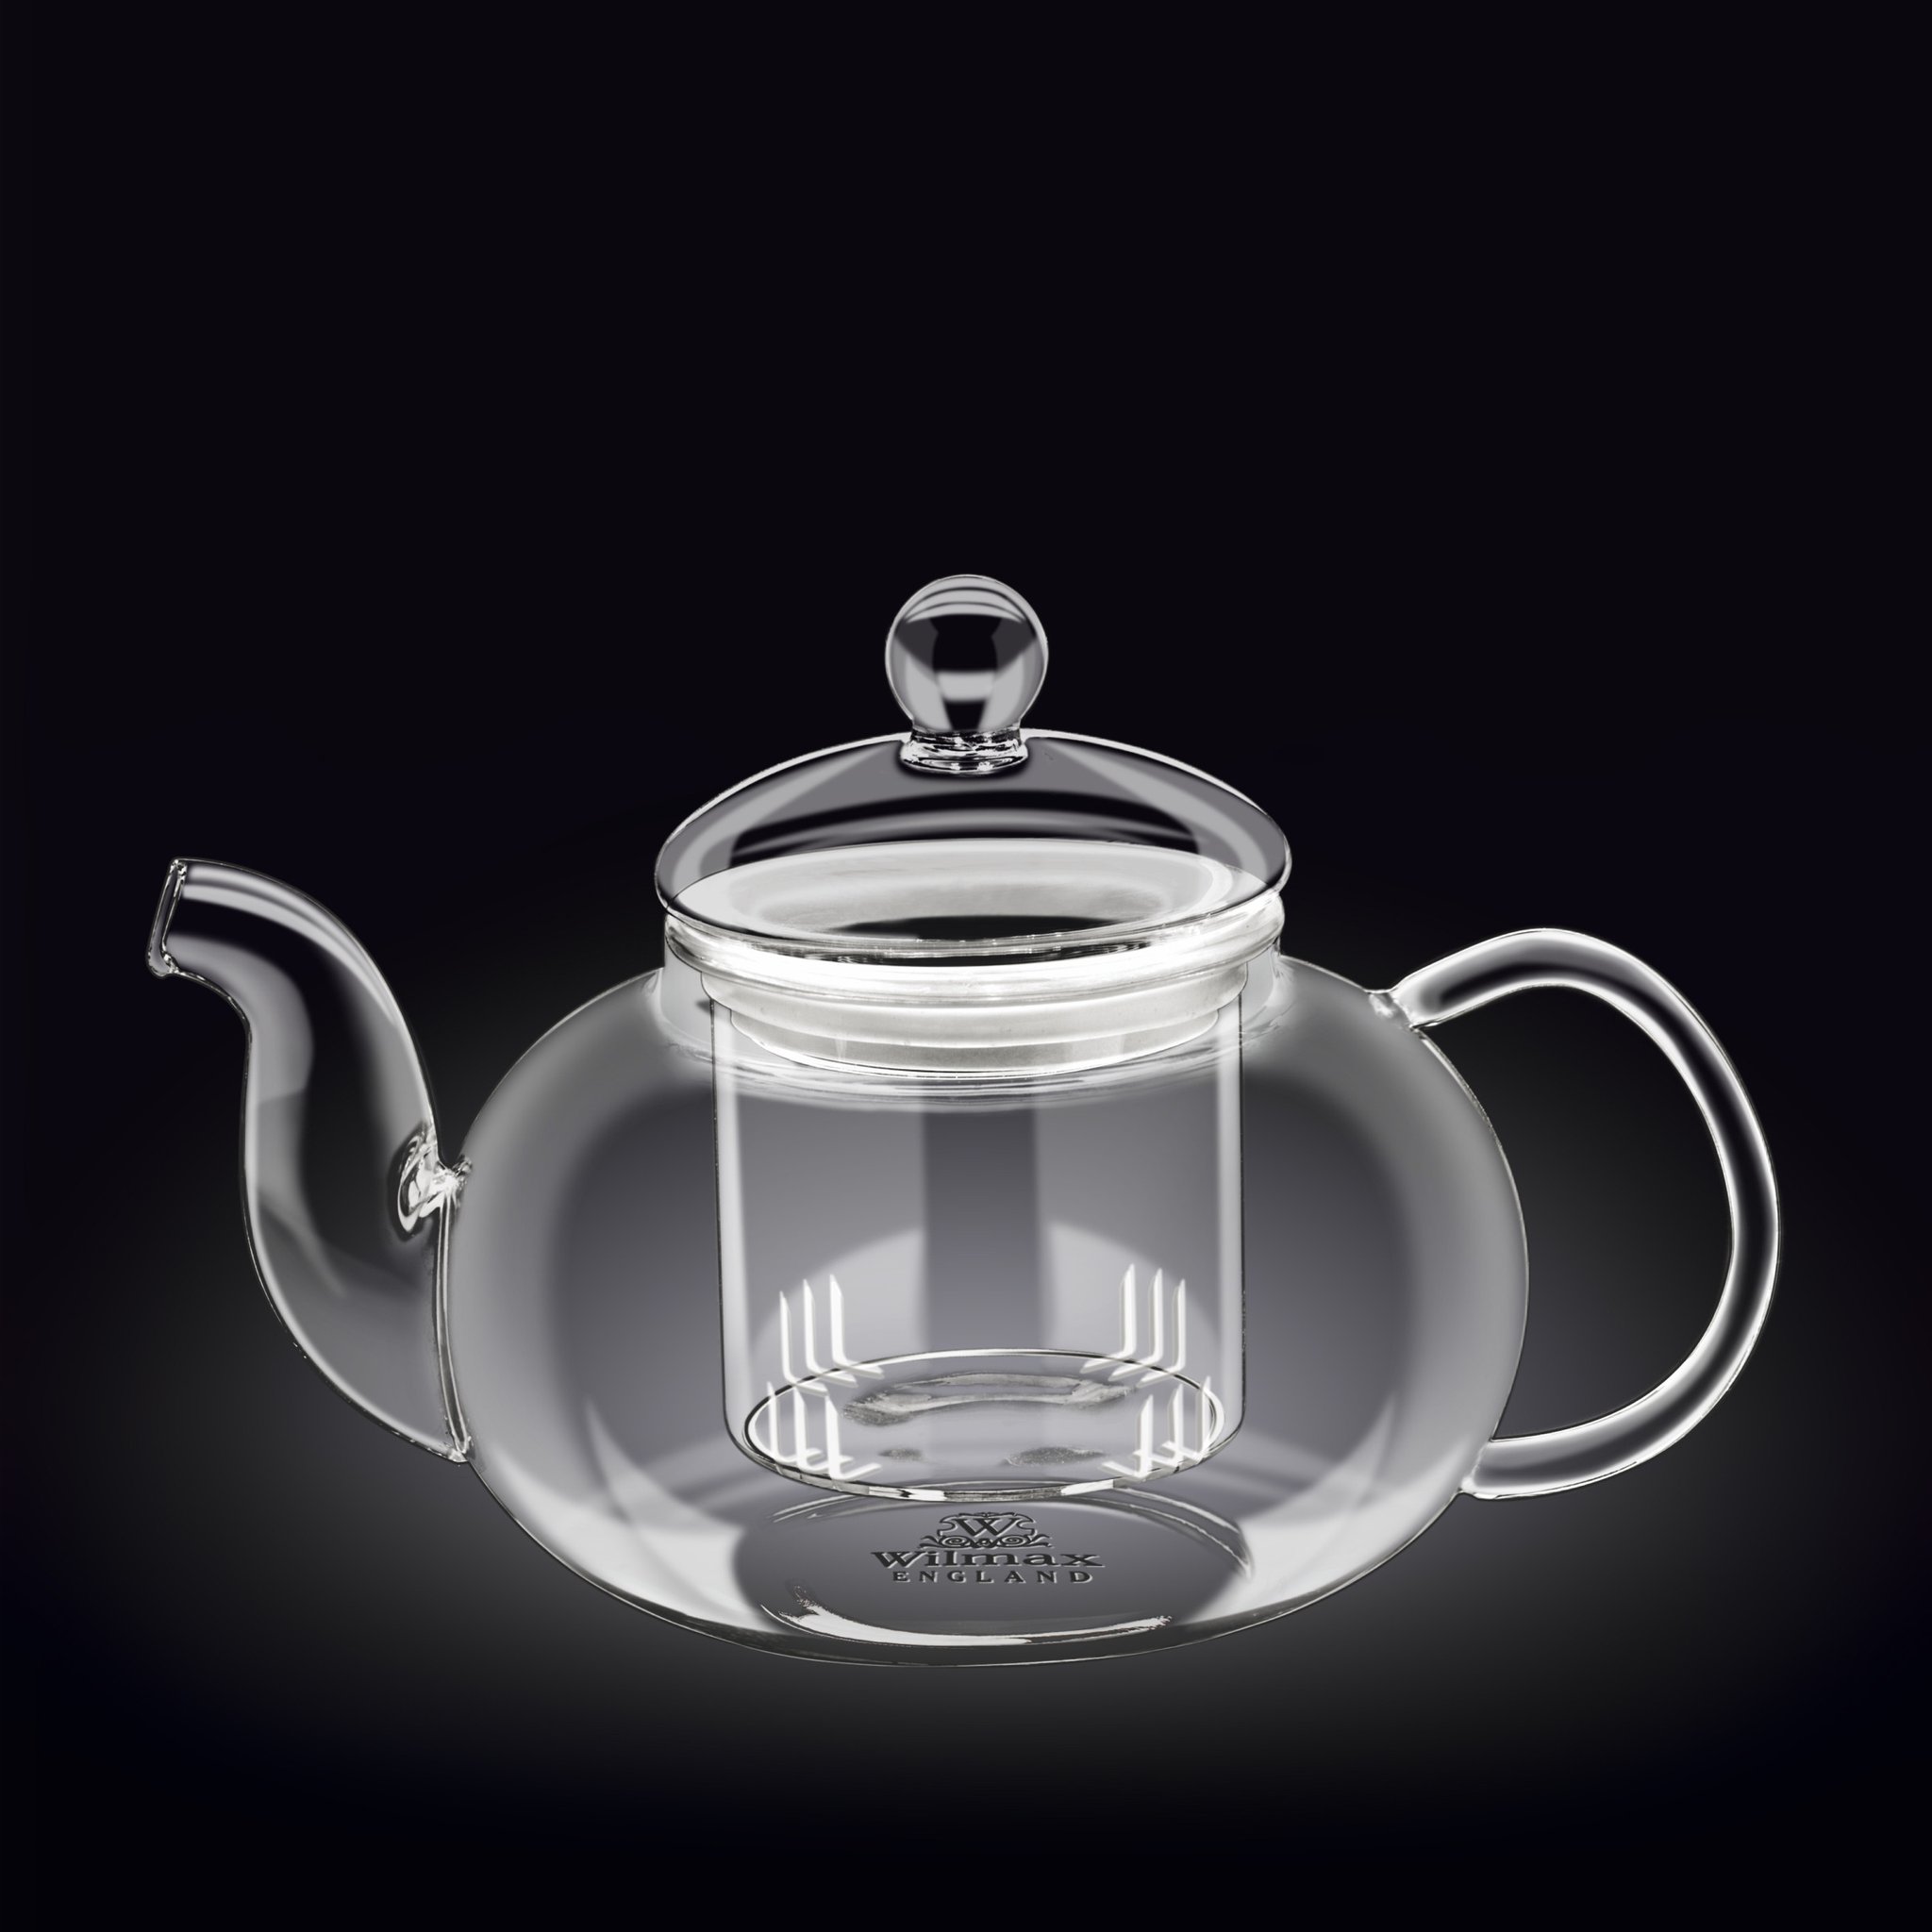 Чайник  Wilmax Thermo 1550 мл чайник заварочный profi cook pc tk 1165 1100 вт серебристый прозрачный 0 5 л стекло